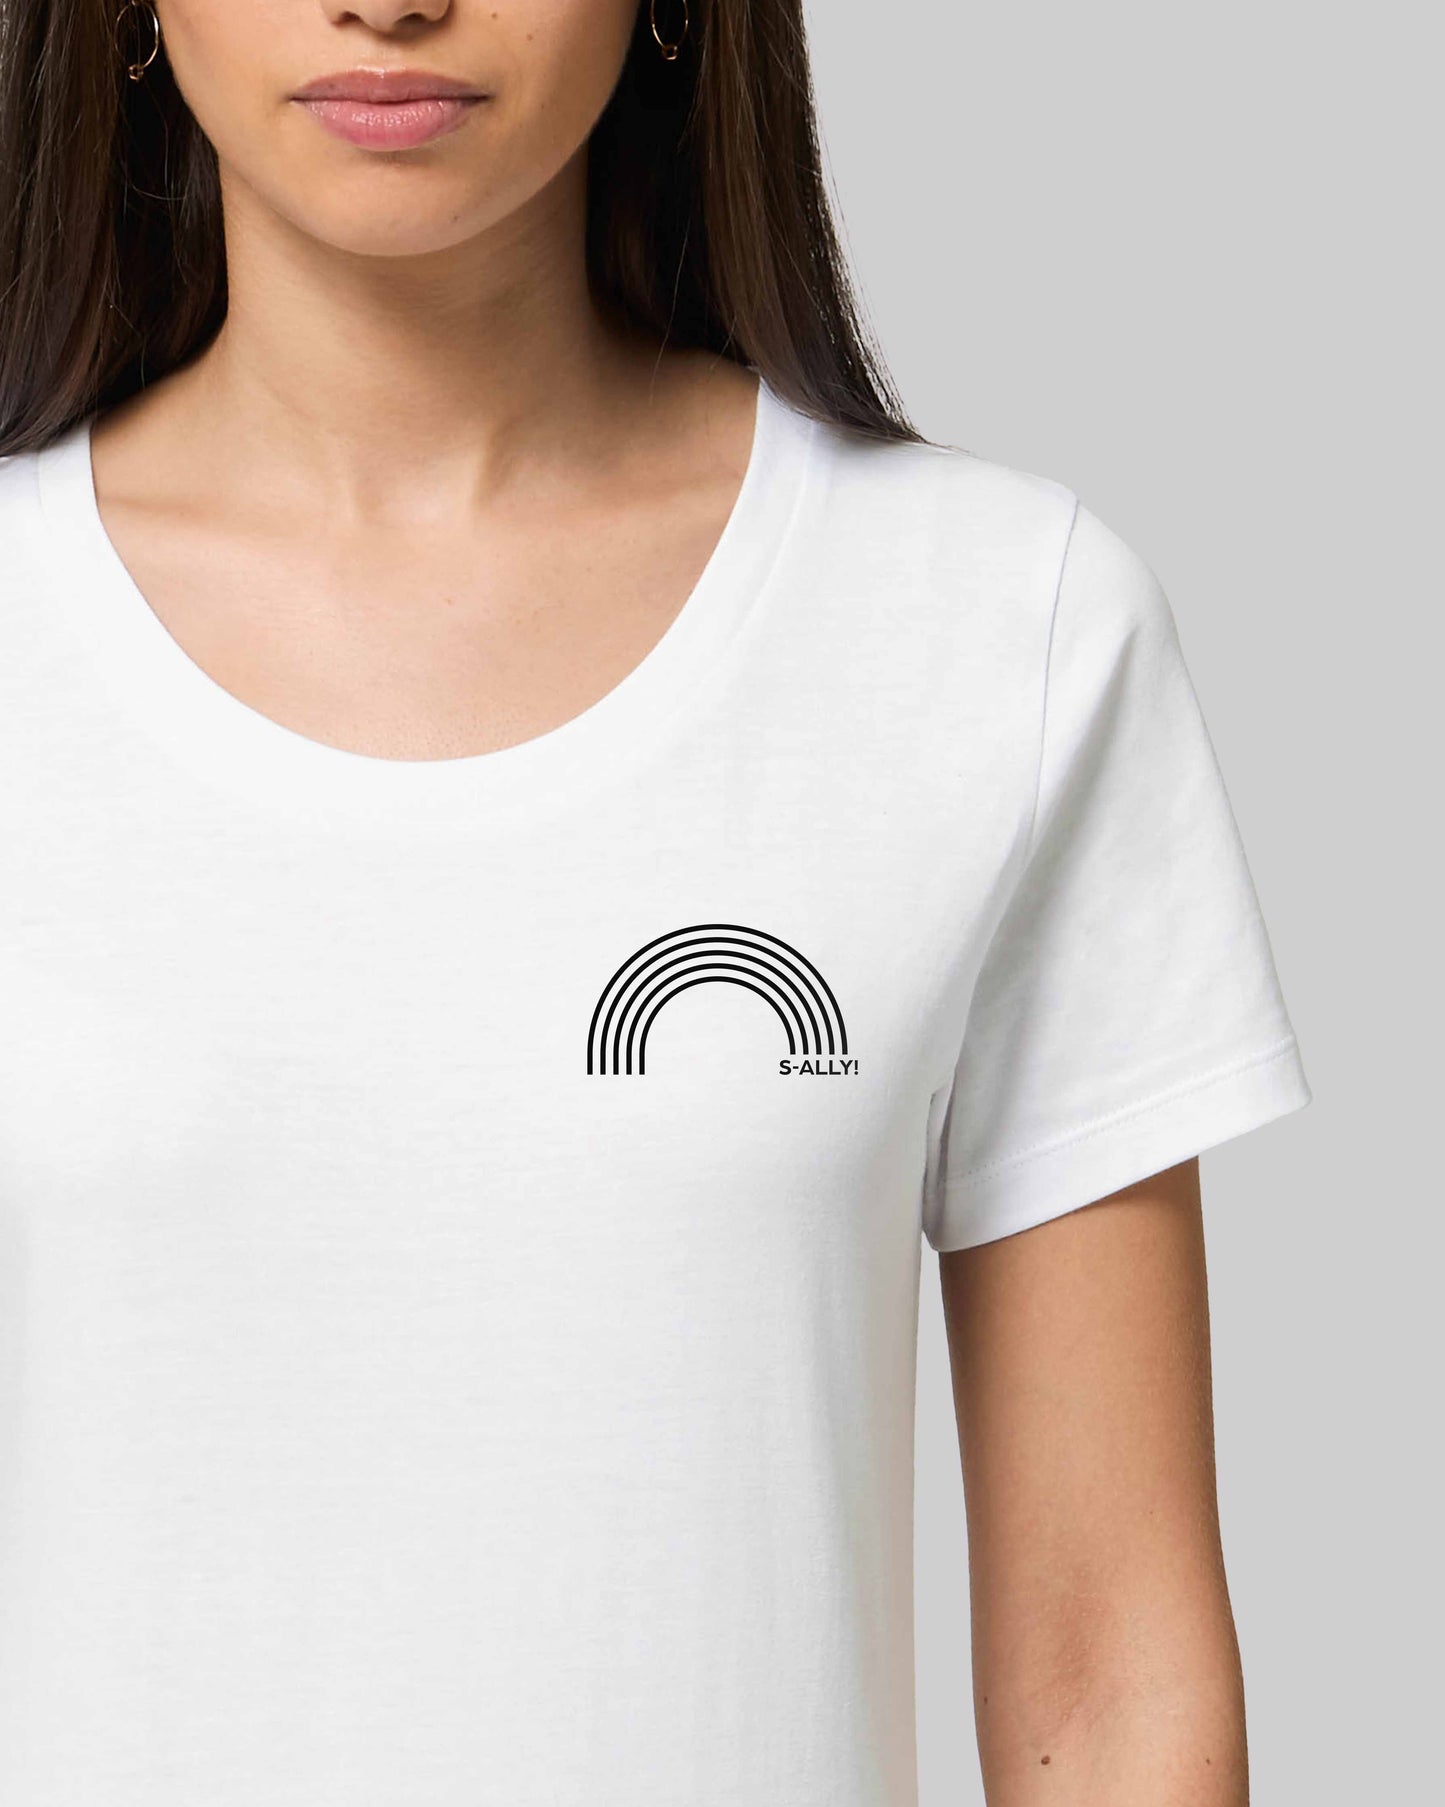 EINHORST® Organic Shirt tailliert in "Weiß" mit dem Motiv "s-ally Regenbogen" in der Kombination schwarzer Regenbogen mit schwarzer Schrift, Bild von weiblicher Person mit Shirt